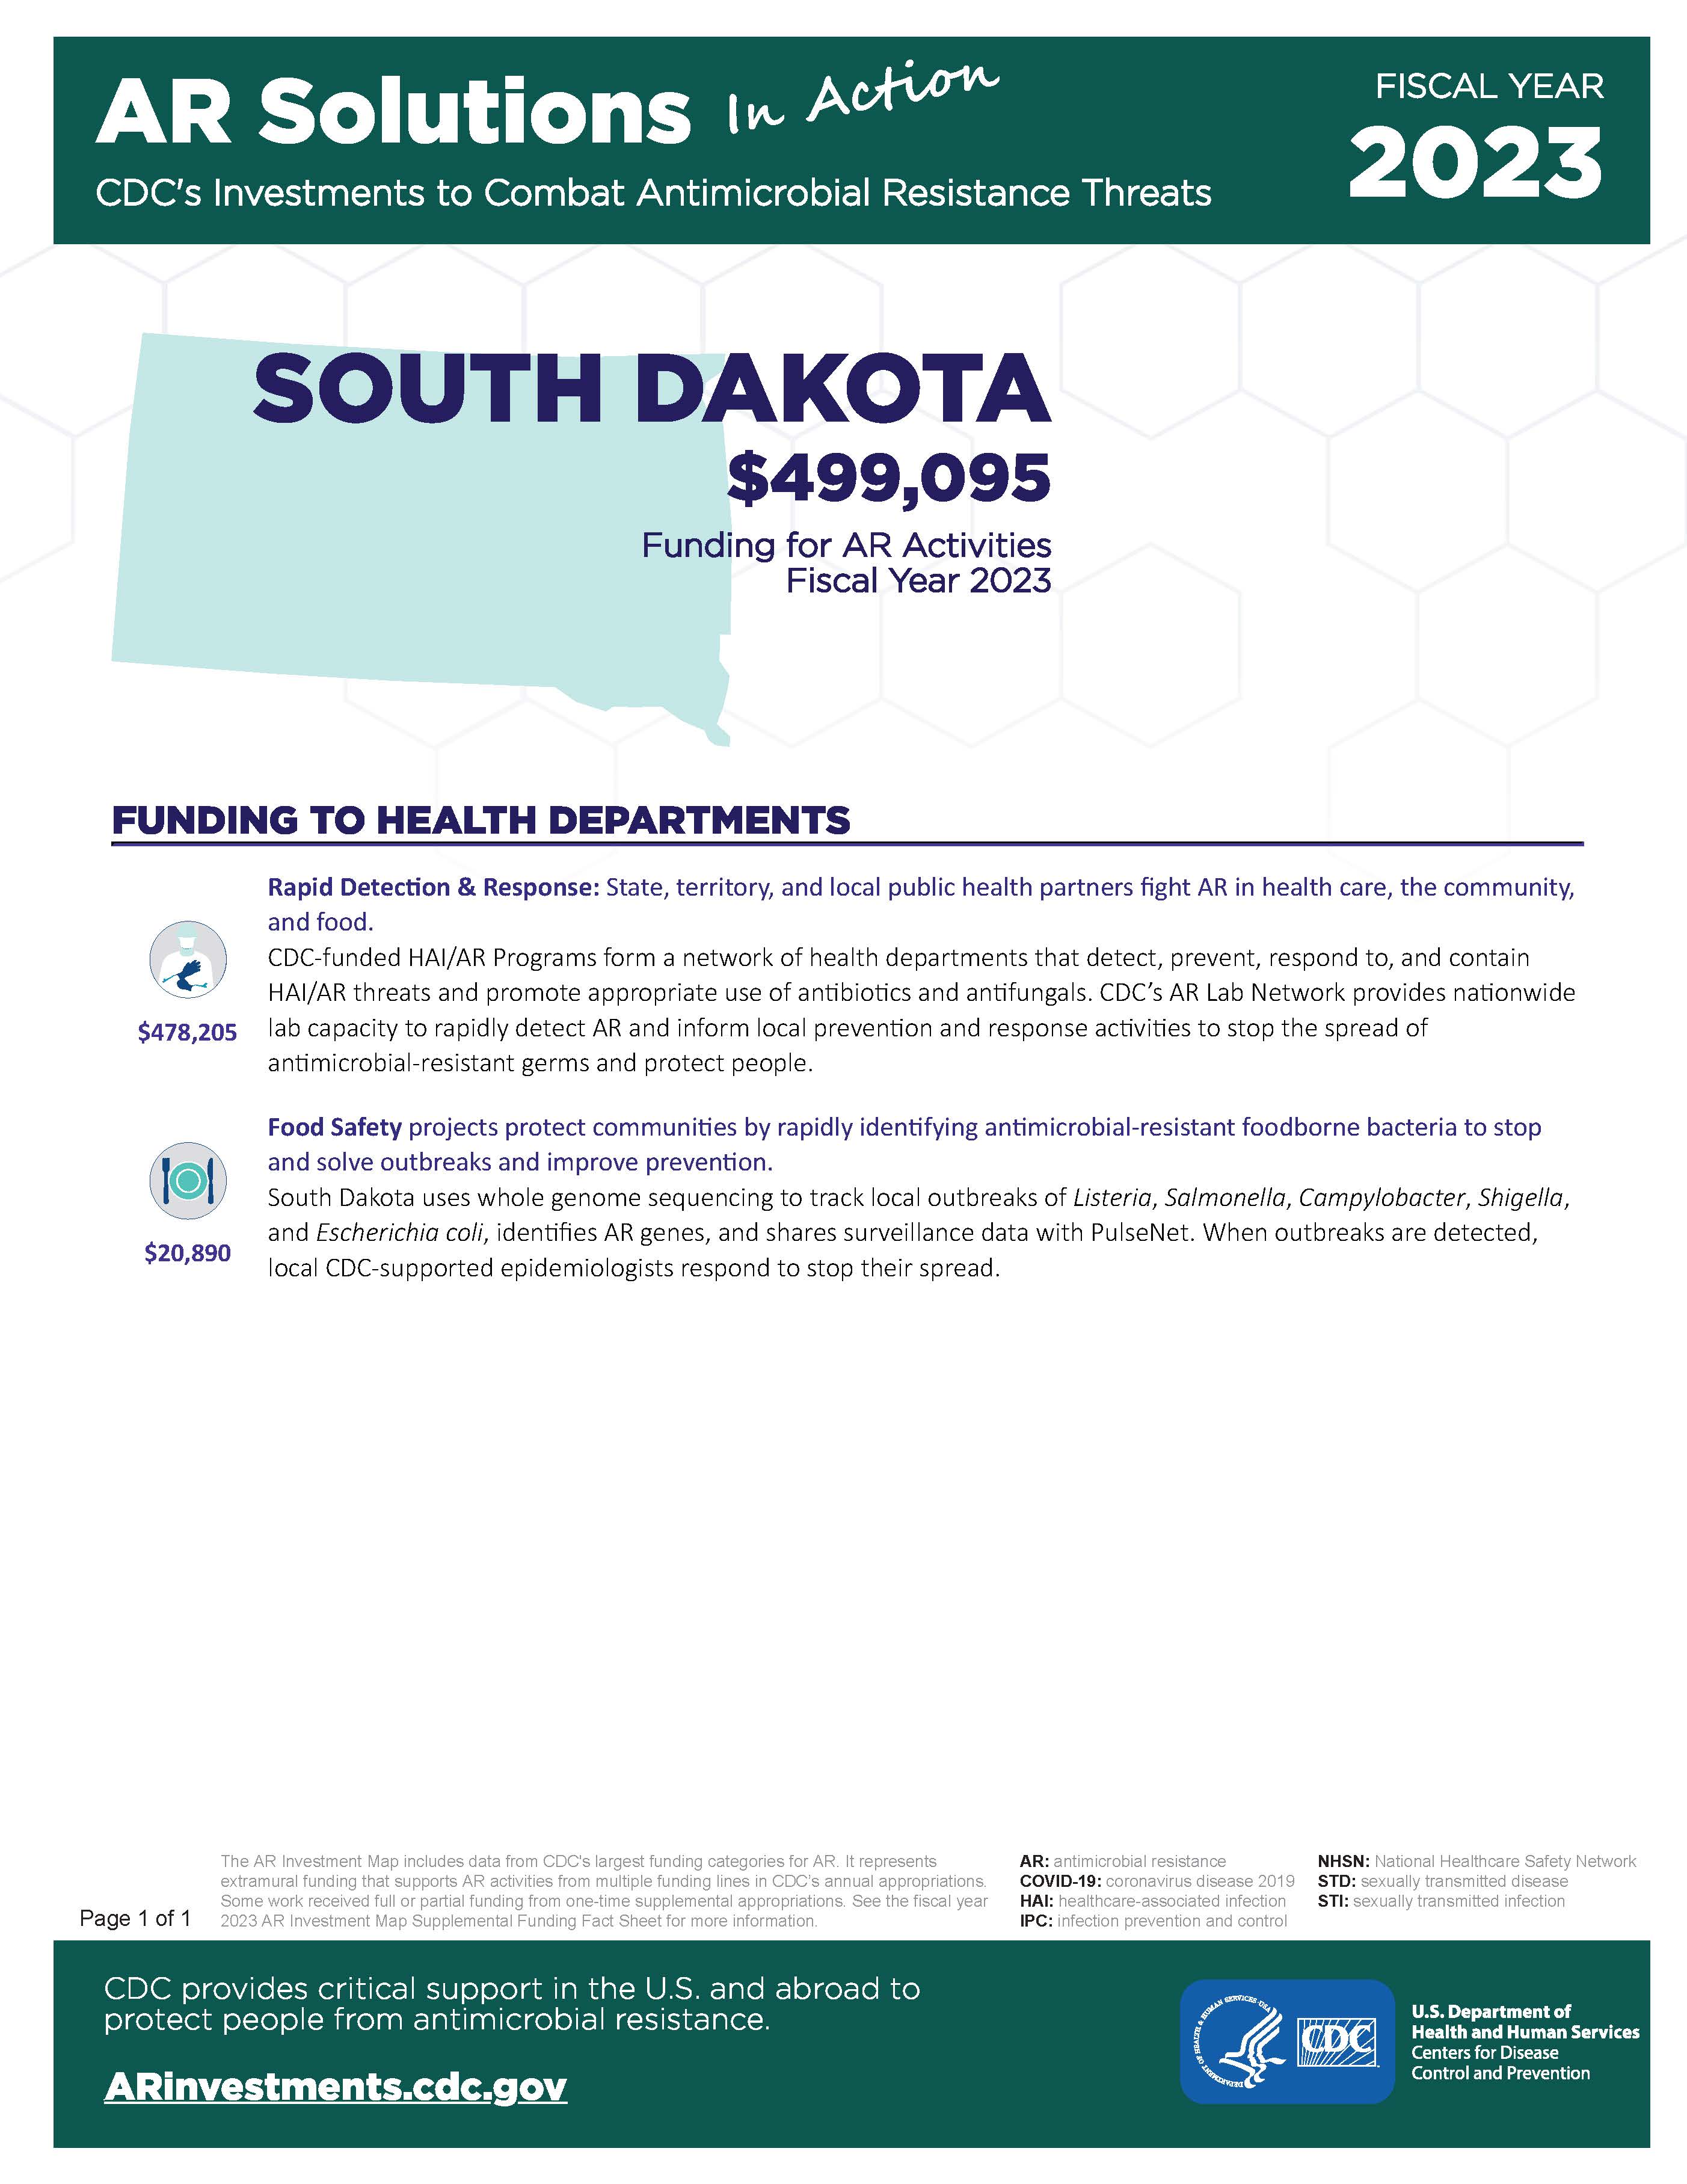 View Factsheet for South Dakota